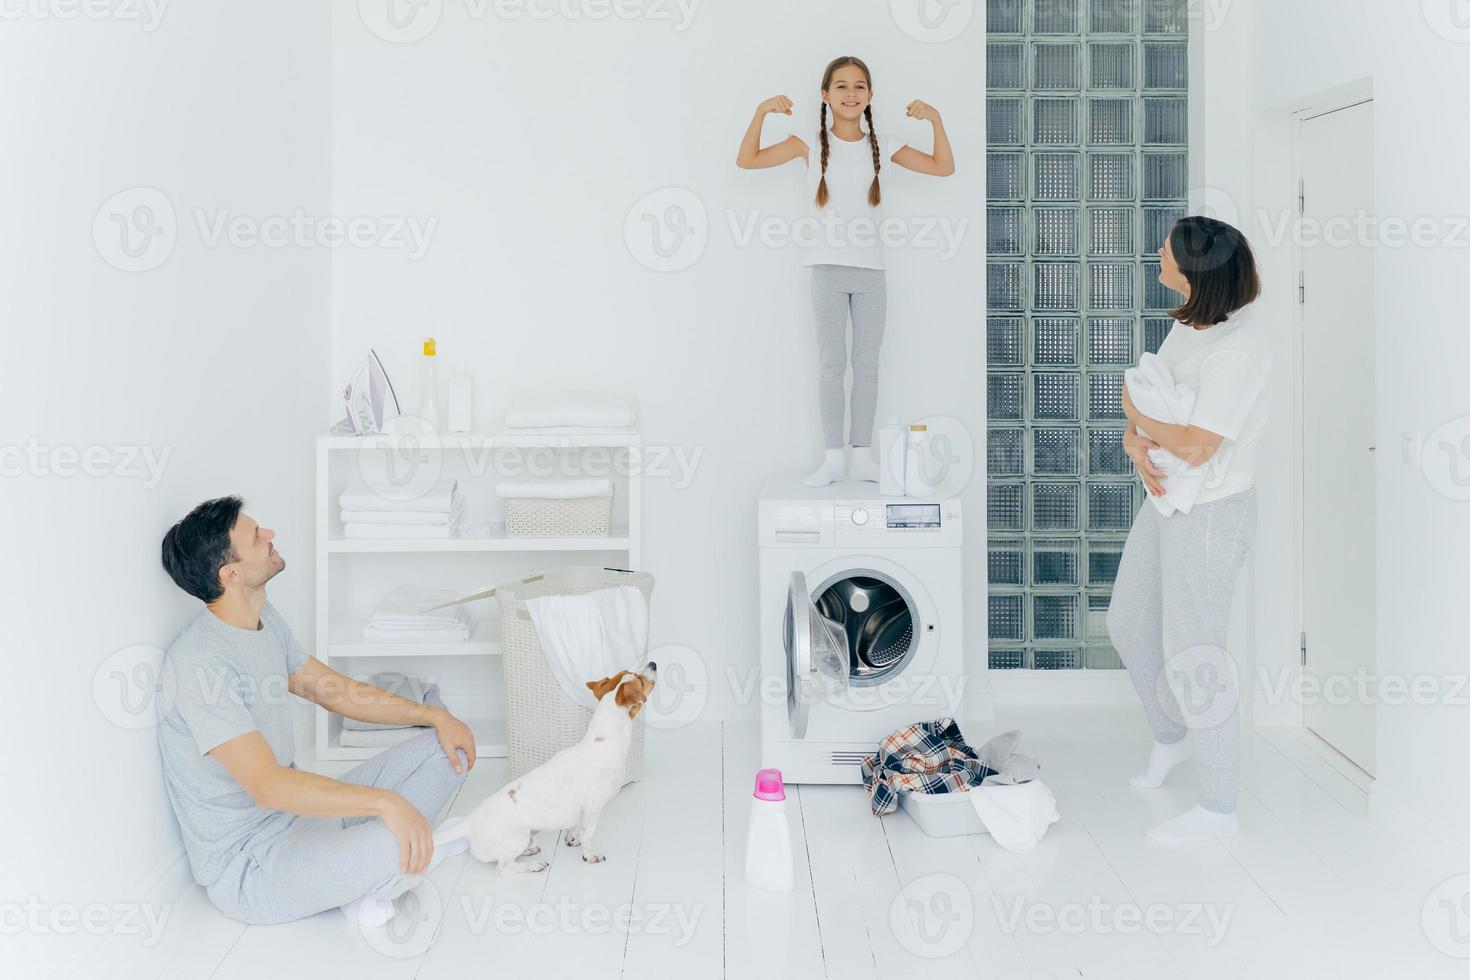 foto de estudante feliz posa em cima da máquina de lavar, mostra os músculos, levanta os braços, pronto para ajudar os pais na lavagem ou lavanderia. mulher e homem posam na lavanderia com cachorro e criança pequena